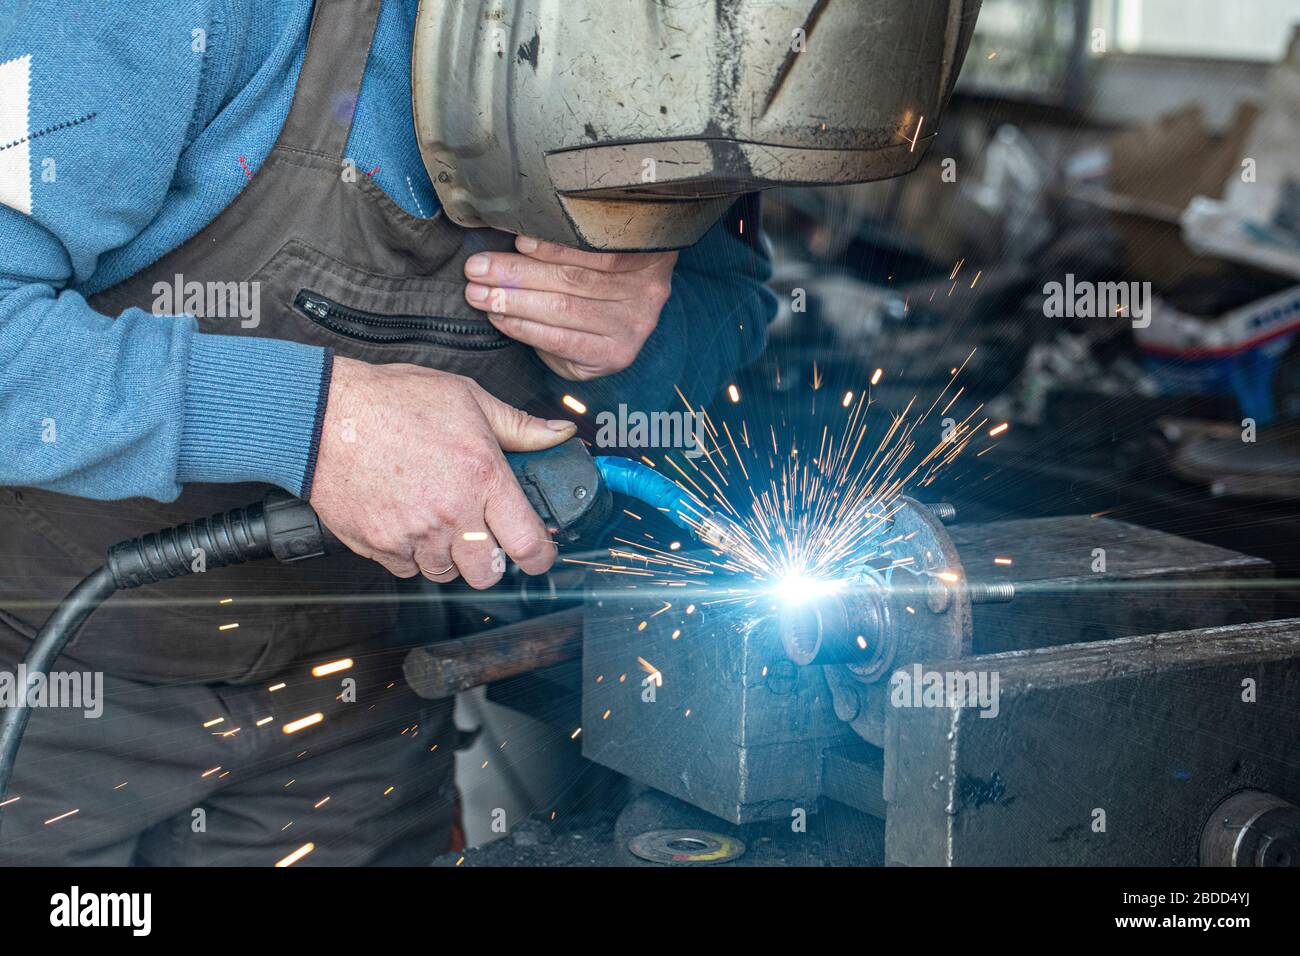 Locksmith welder welds a workpiece in a workshop. Stock Photo